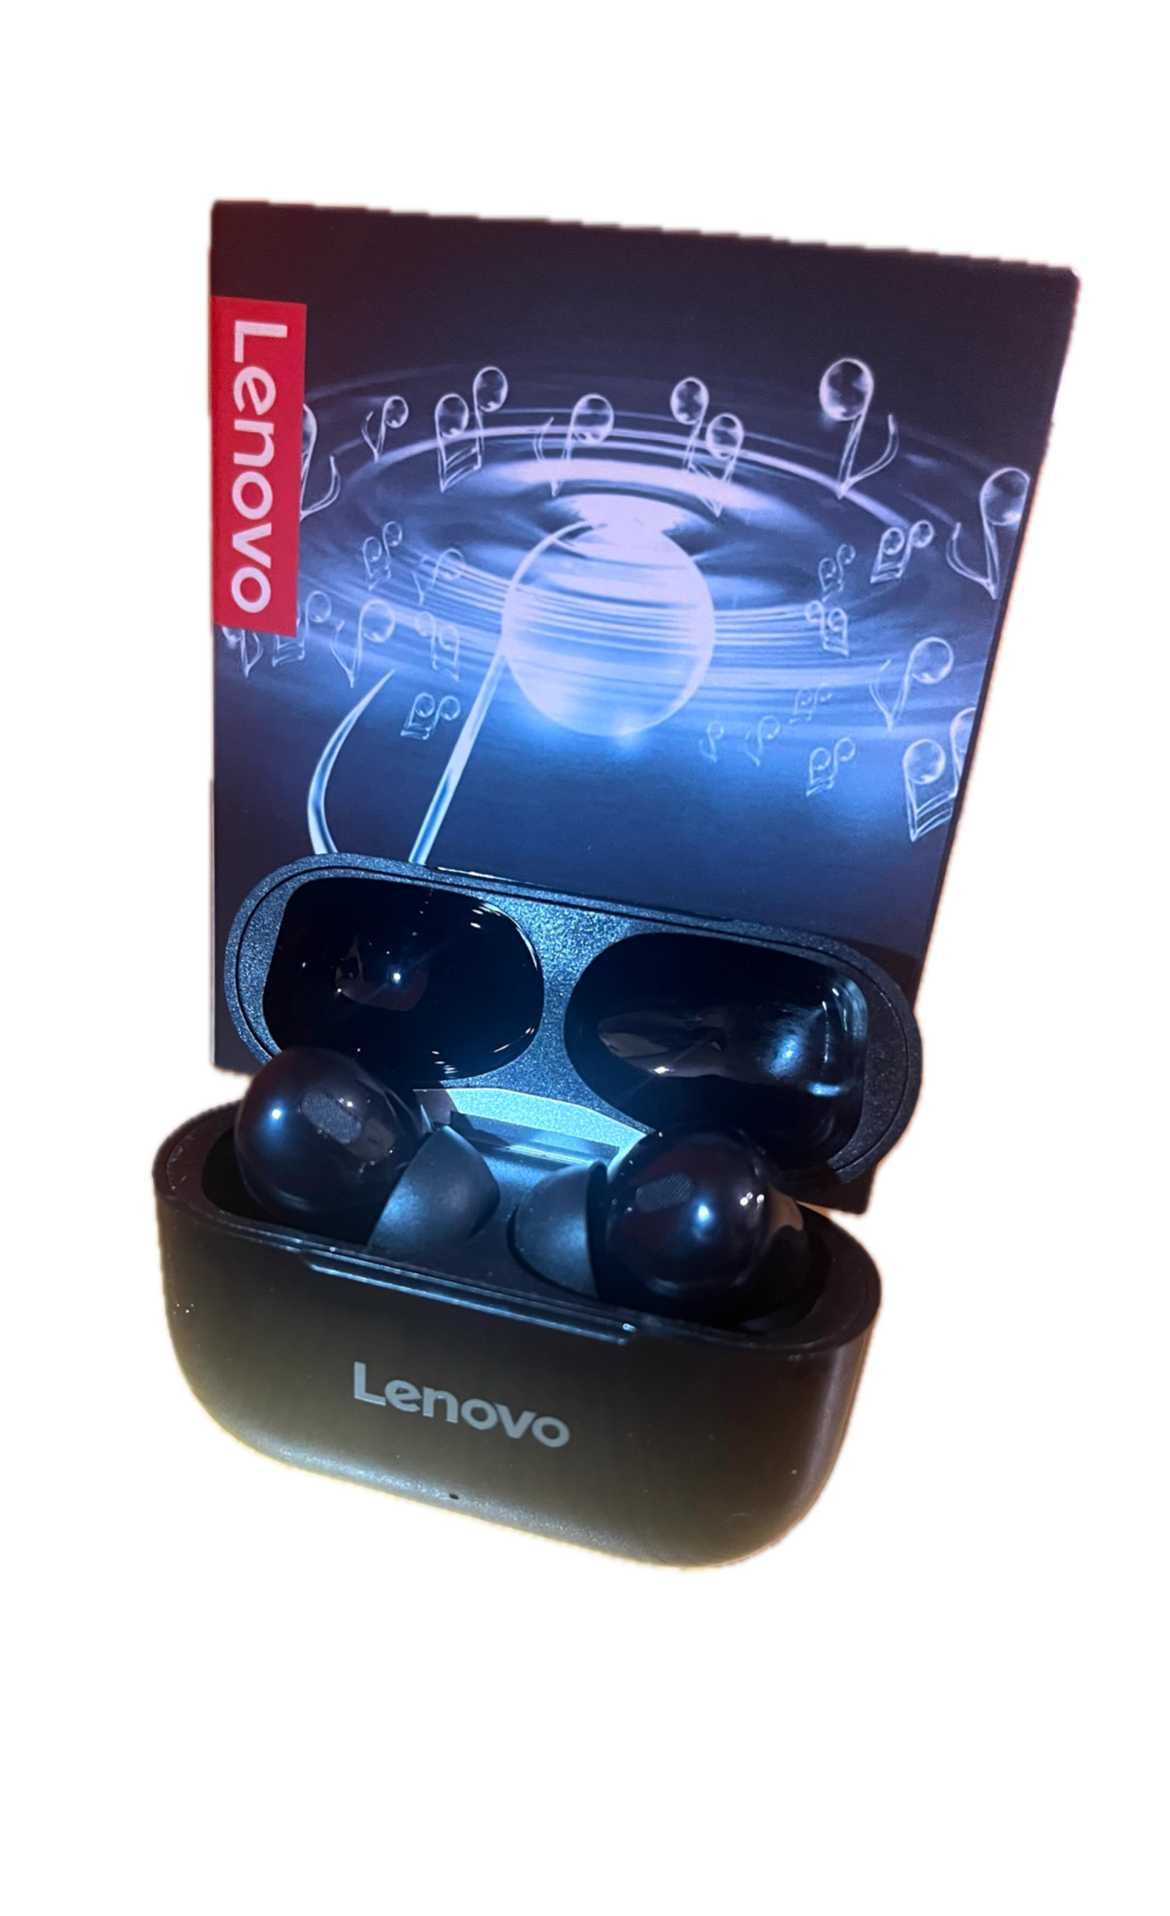 Nowe słuchawki Lenovo bezprzewodowe !